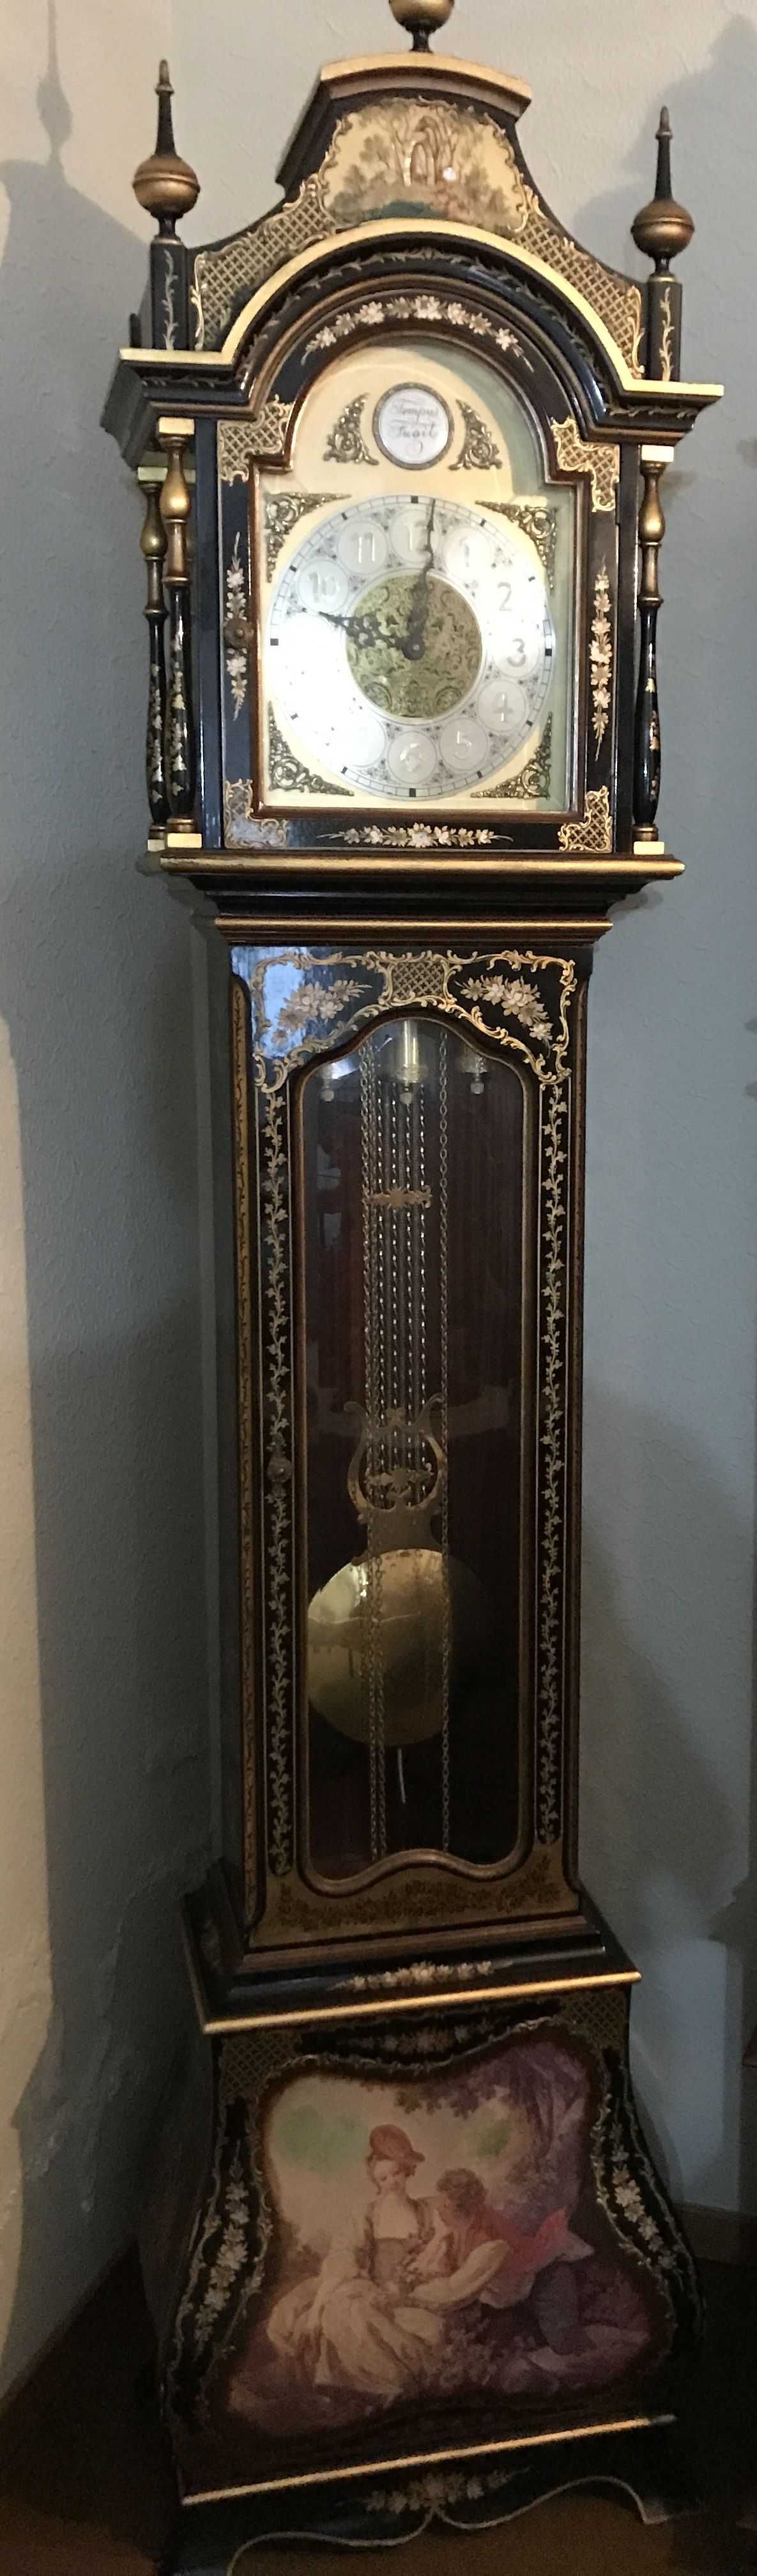 Relógio de pé antigo